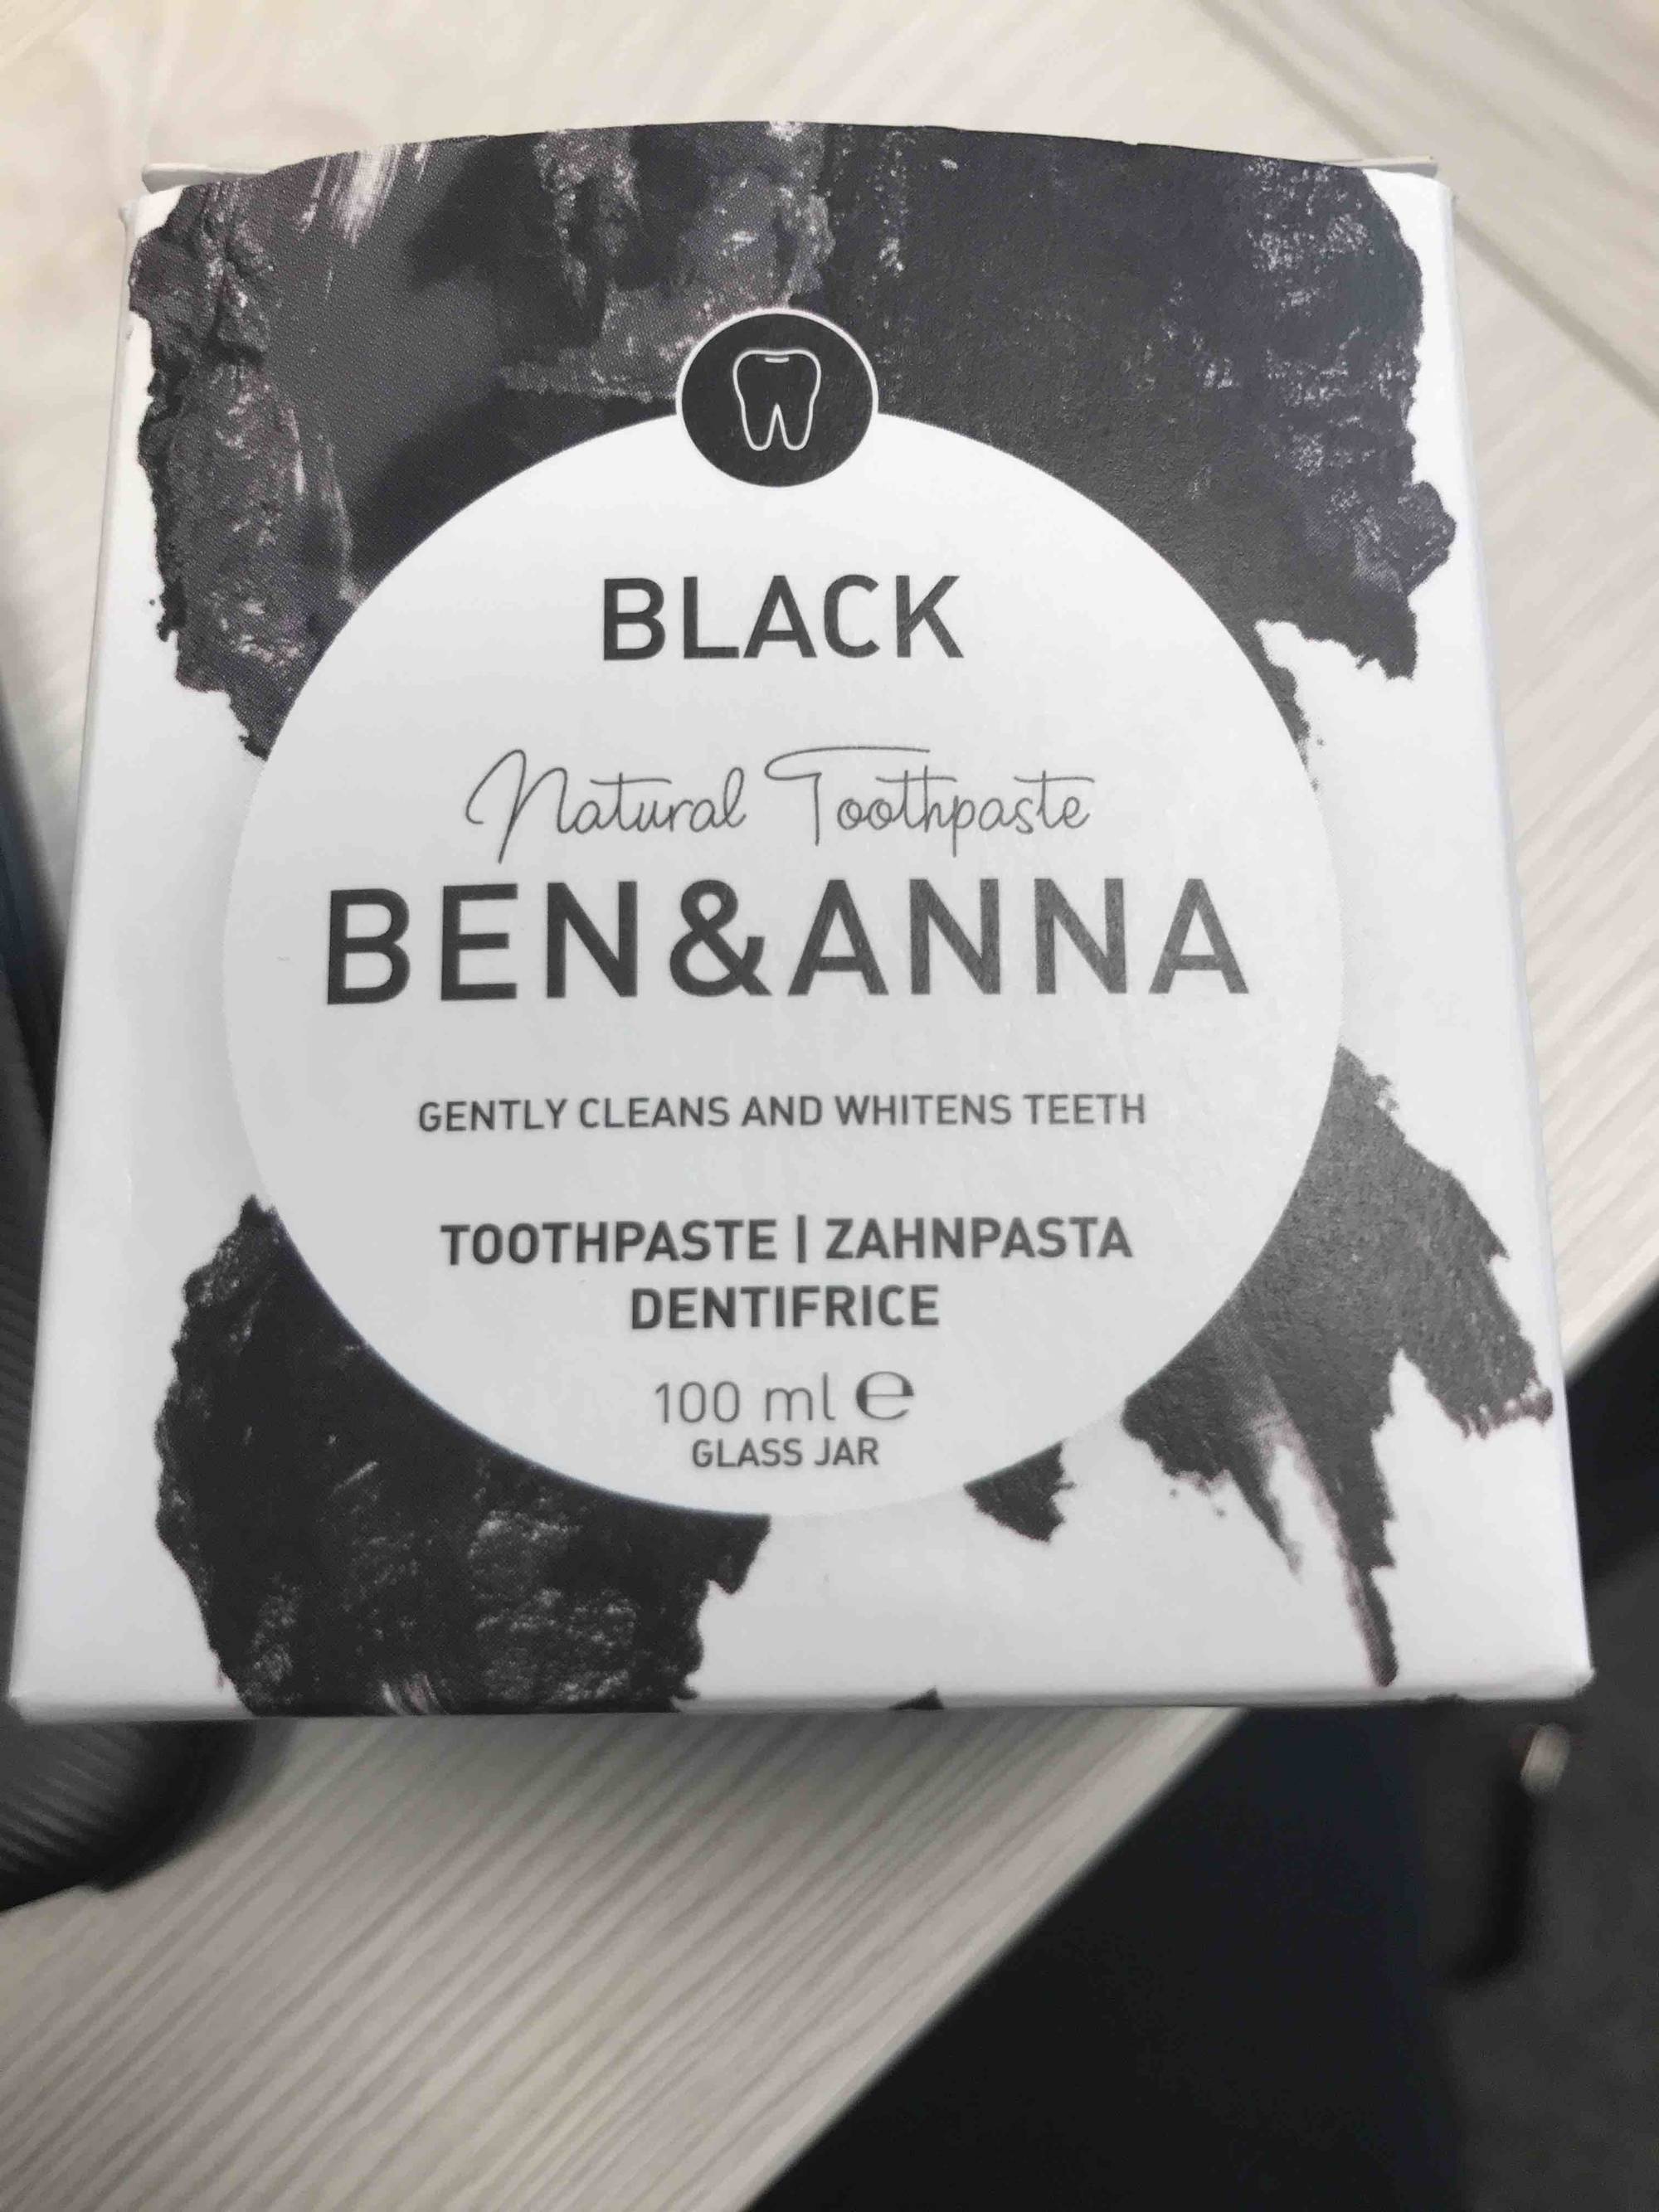 BEN & ANNA - Black - Natural toothpaste